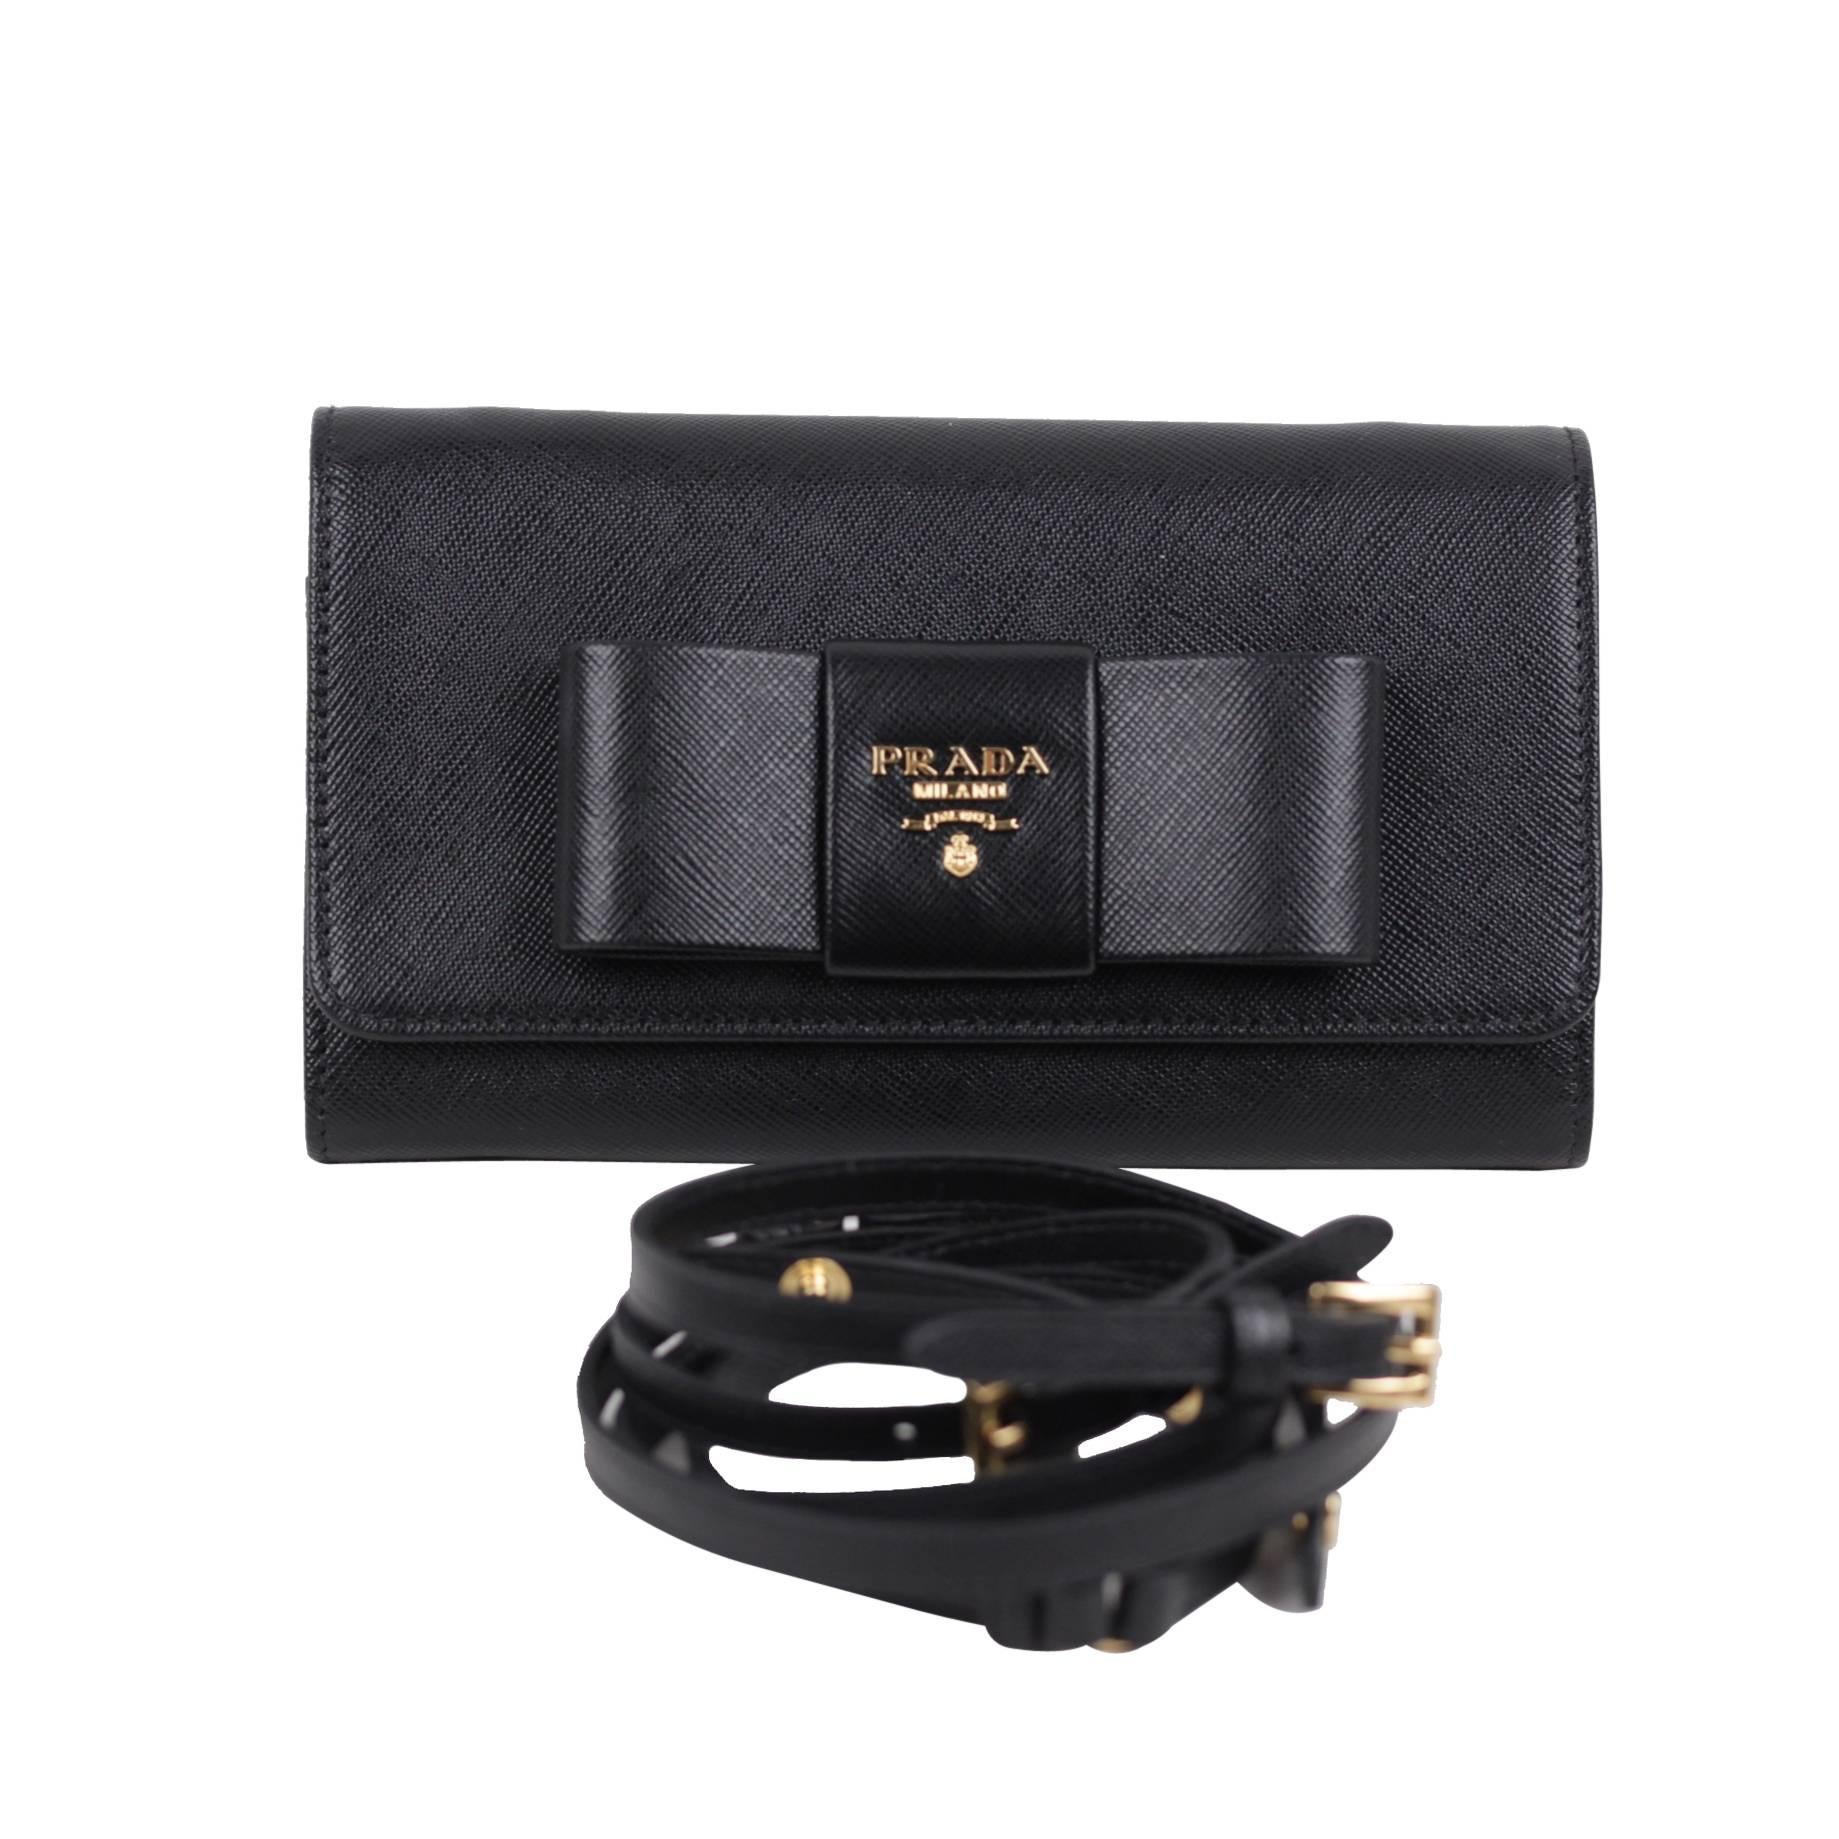 PRADA Black Leather SAFFIANO FIOCCO Ribbon STRAP WALLET Purse WOC 1M1437 BOX